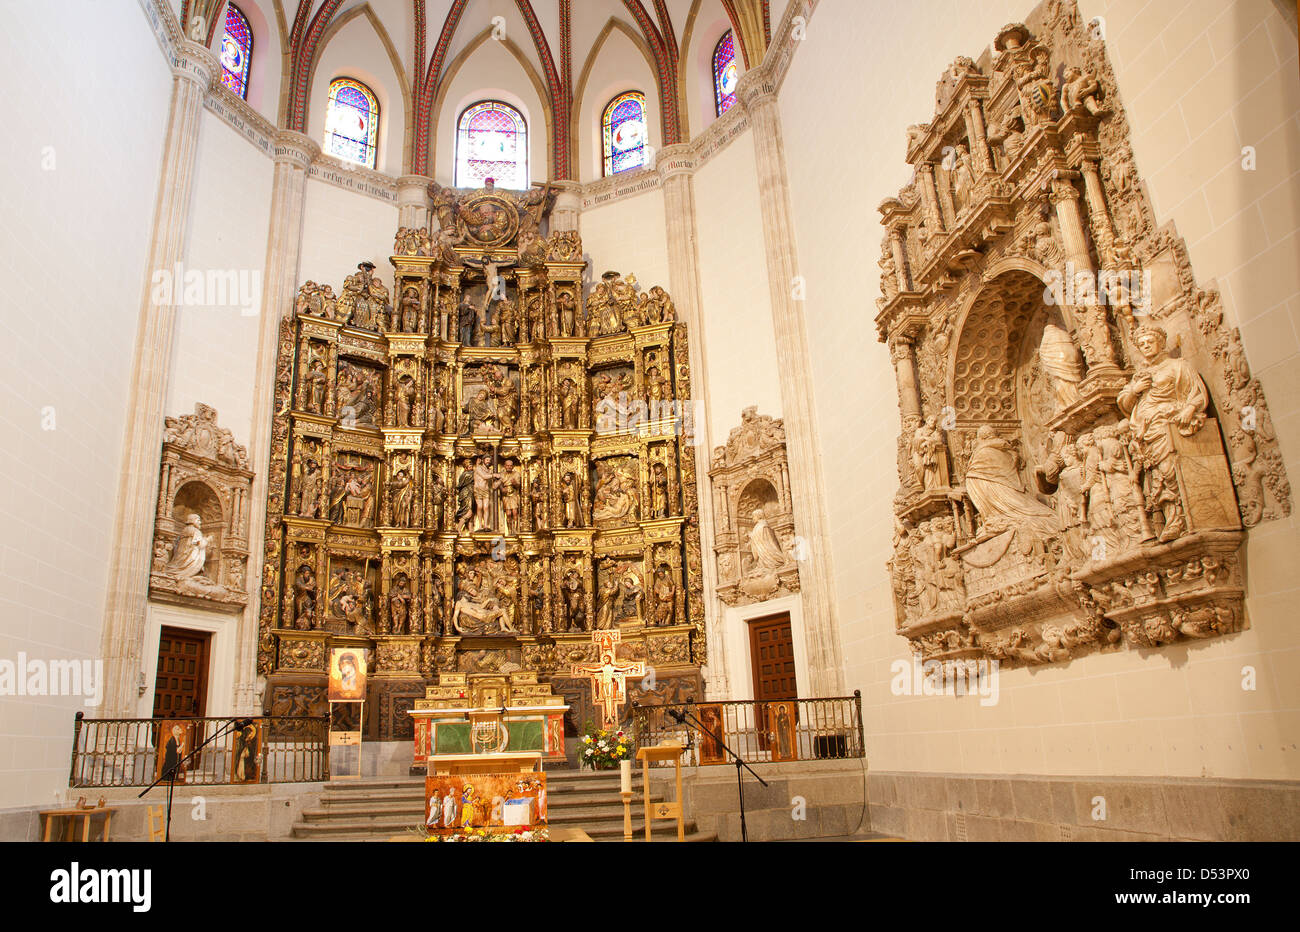 MADRID - MARZO 10: Presbiterio e altare rinascimentale della Capilla del Obispo da Francisco Giralte (1500-1576) Foto Stock